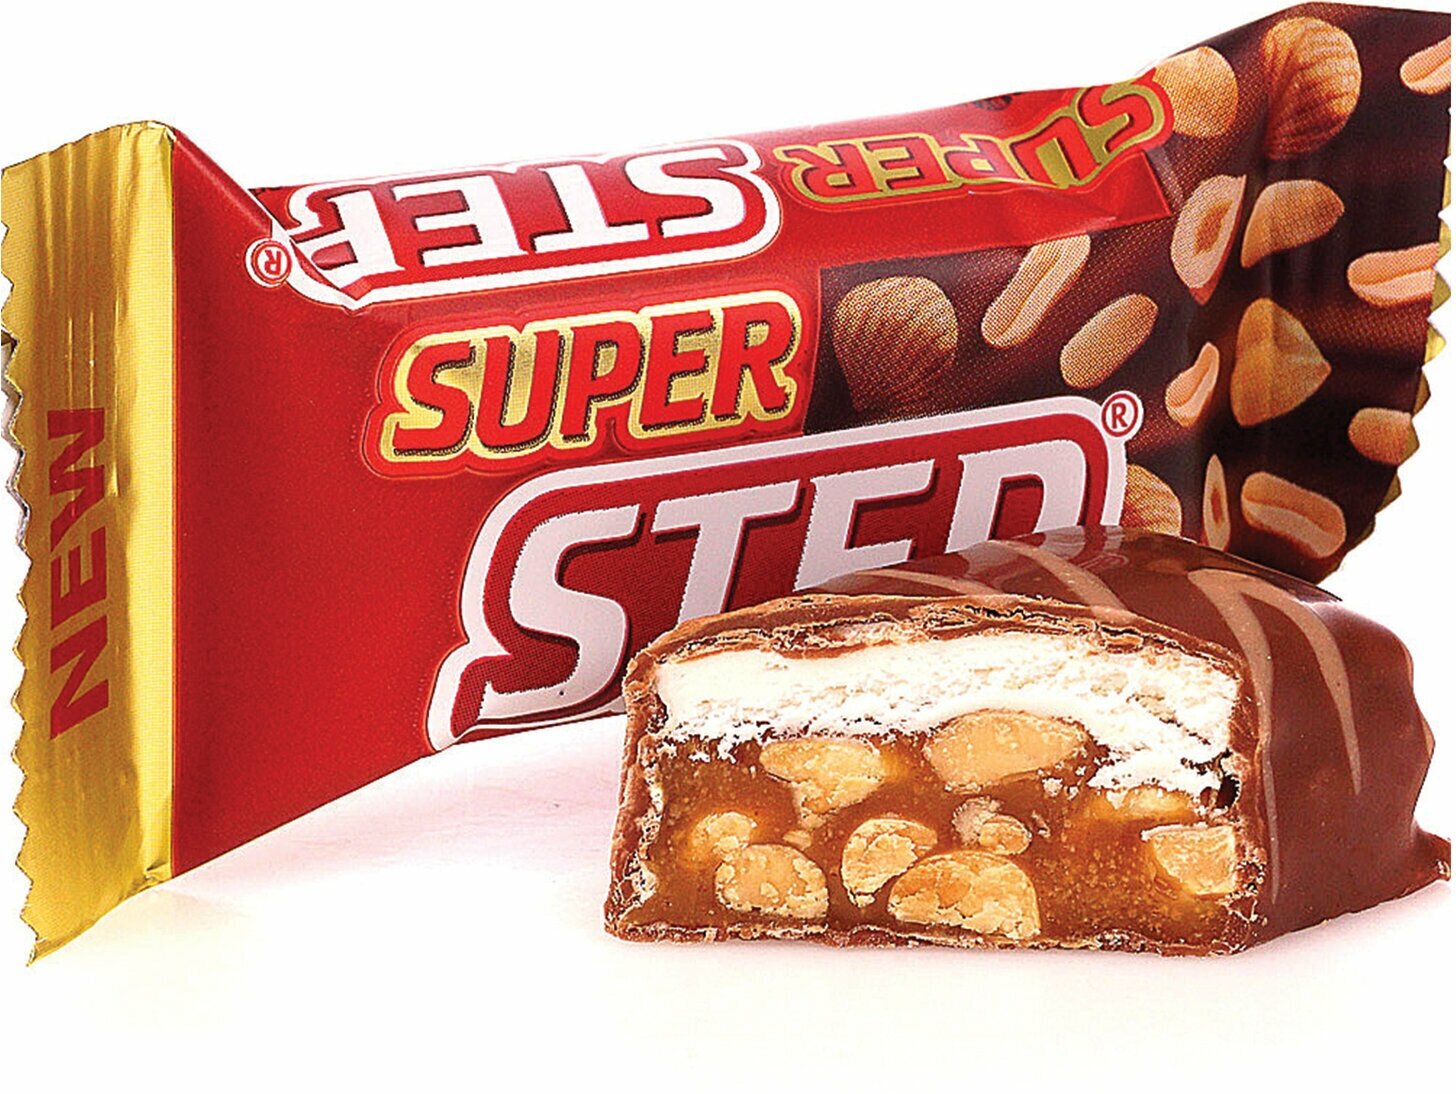 Конфеты шоколадные славянка "Super Step" двухслойные, нуга с арахисом, 1000 г, пакет, 20465